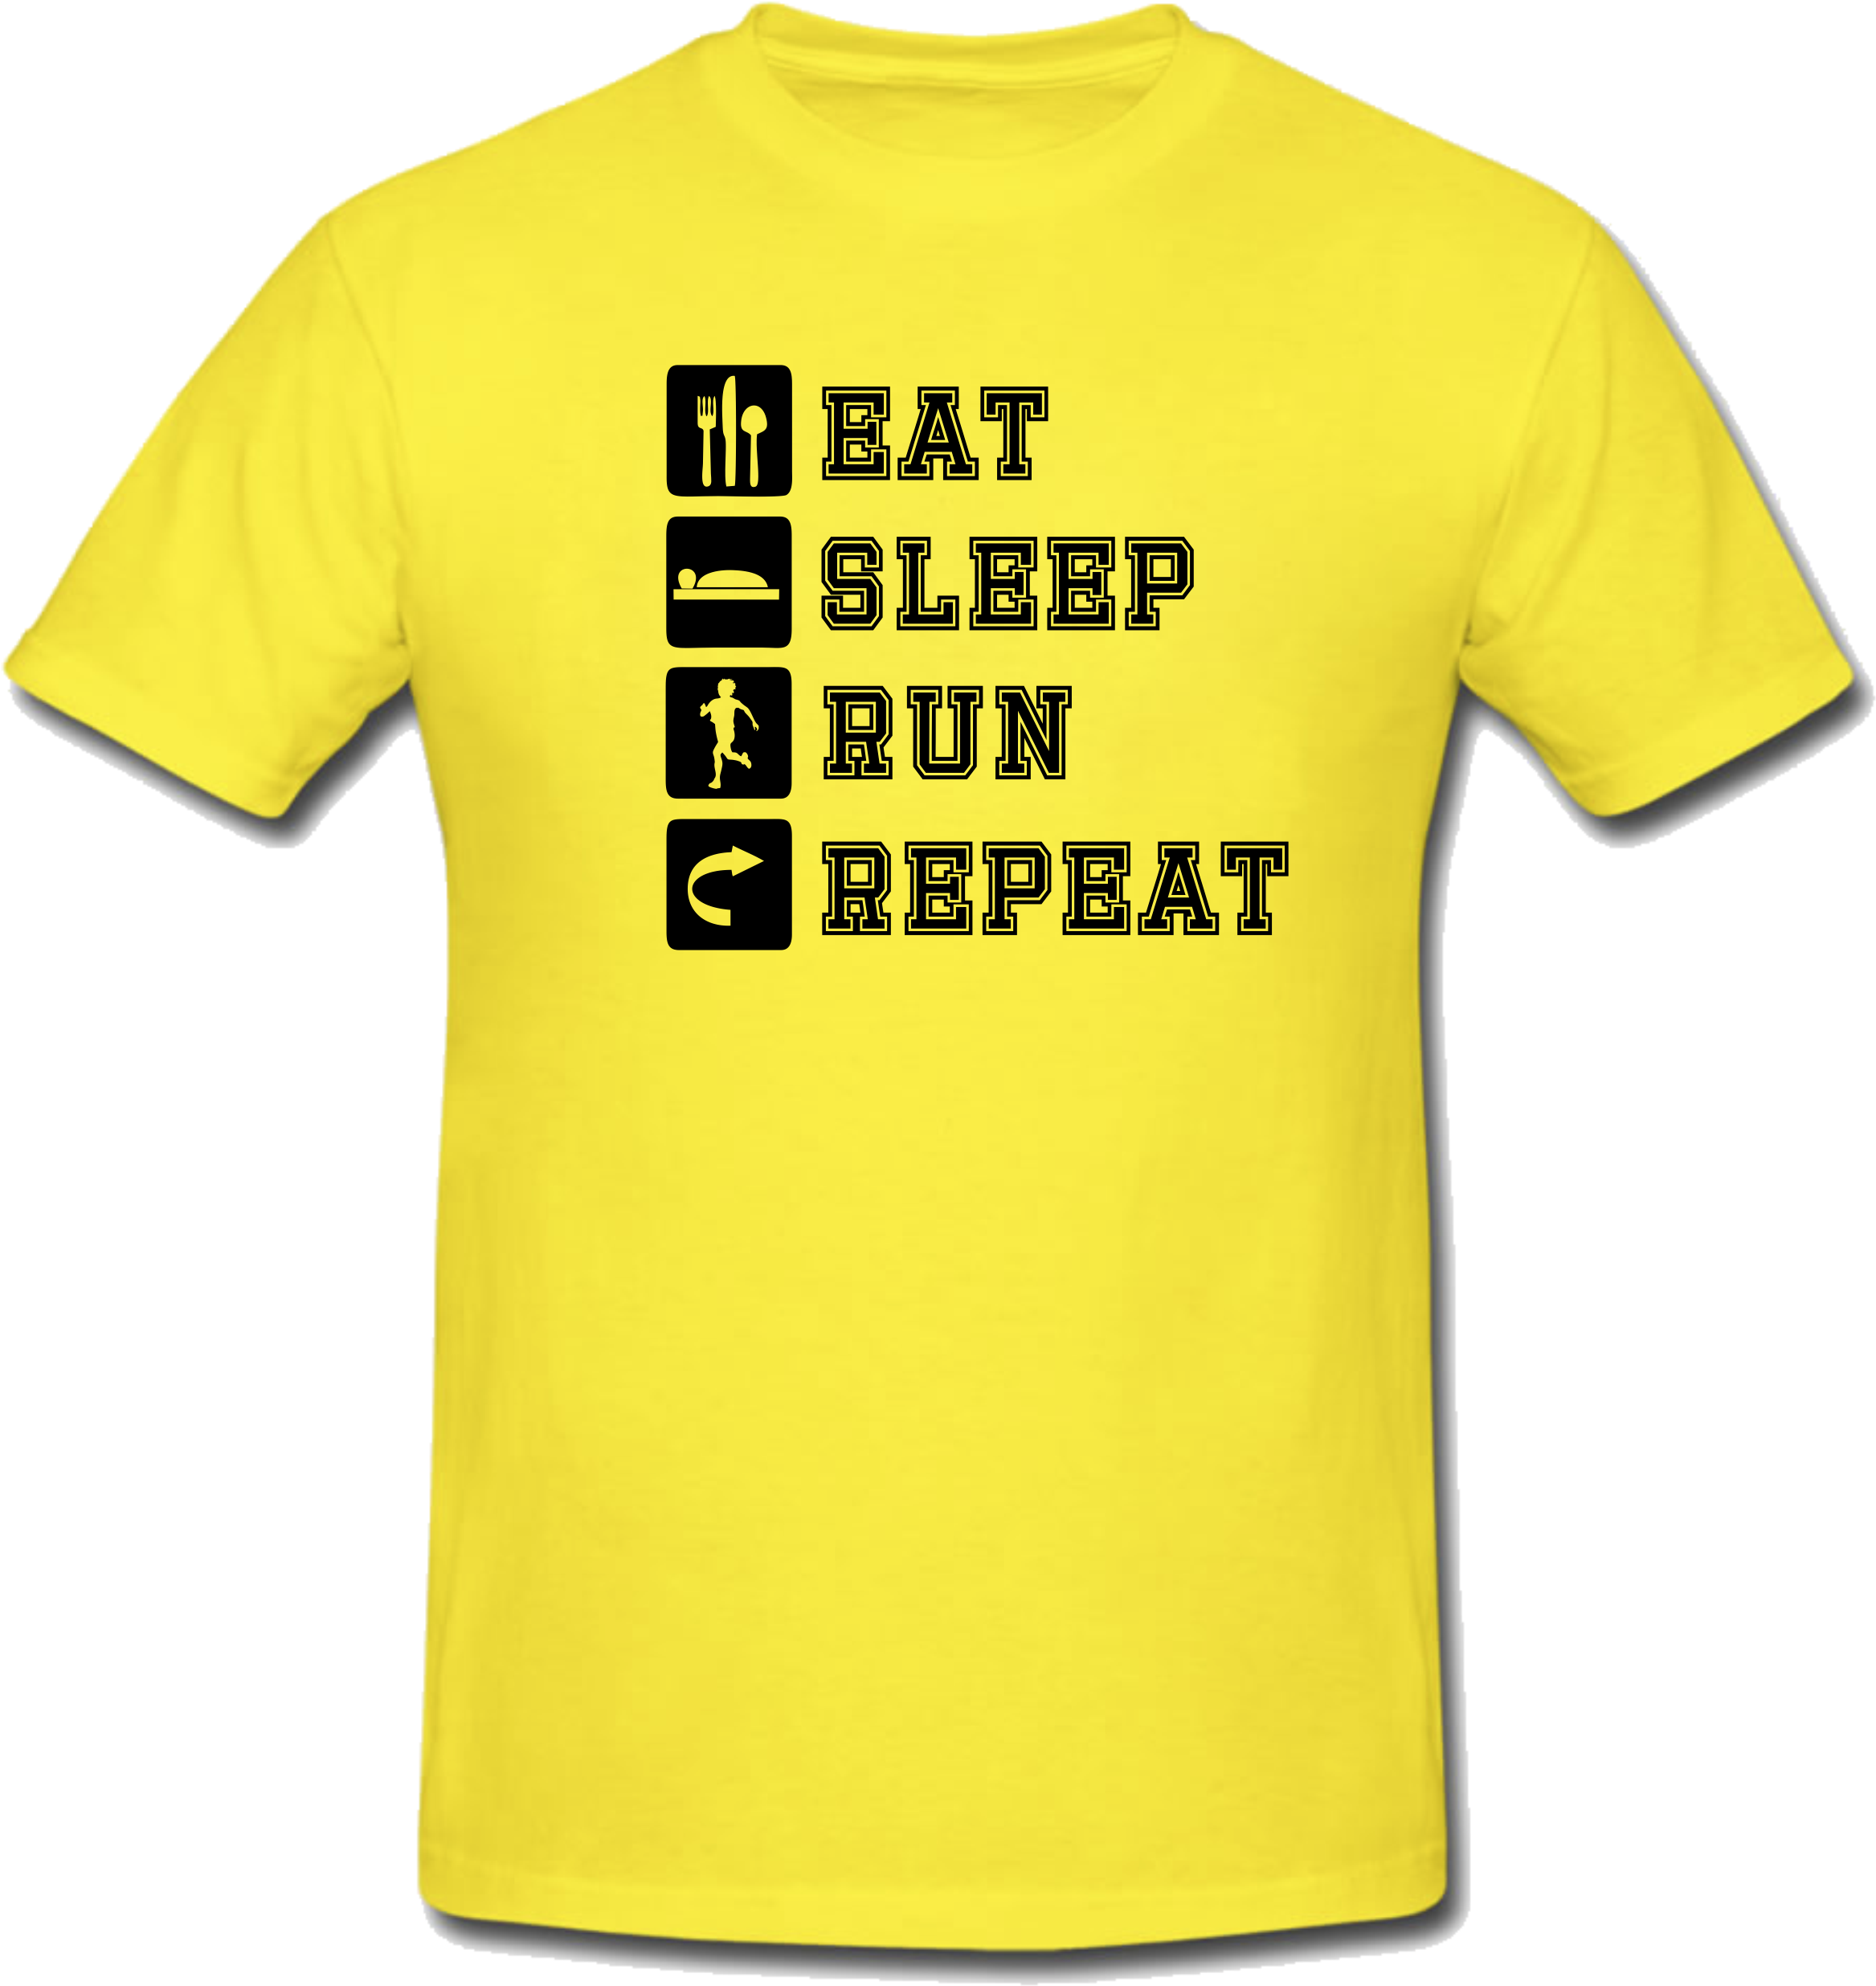 Yellow T-Shirt PNG Transparent Image